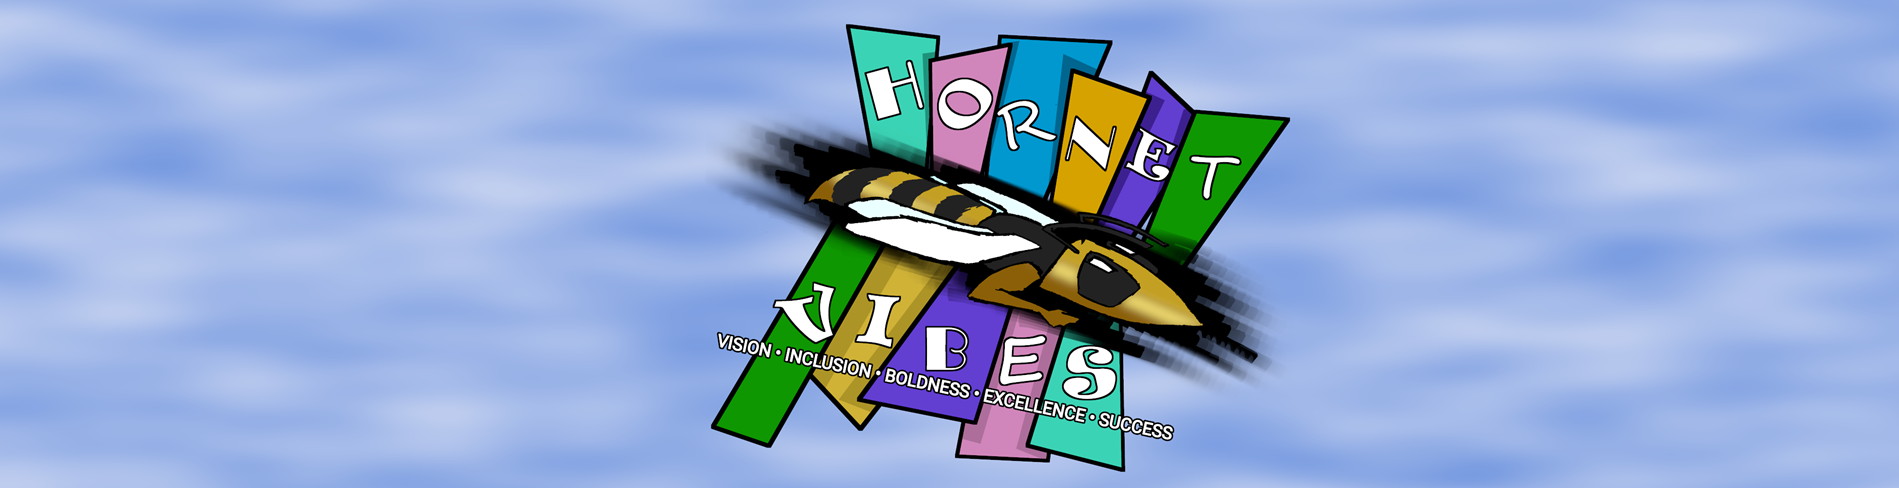 Hornet VIBES